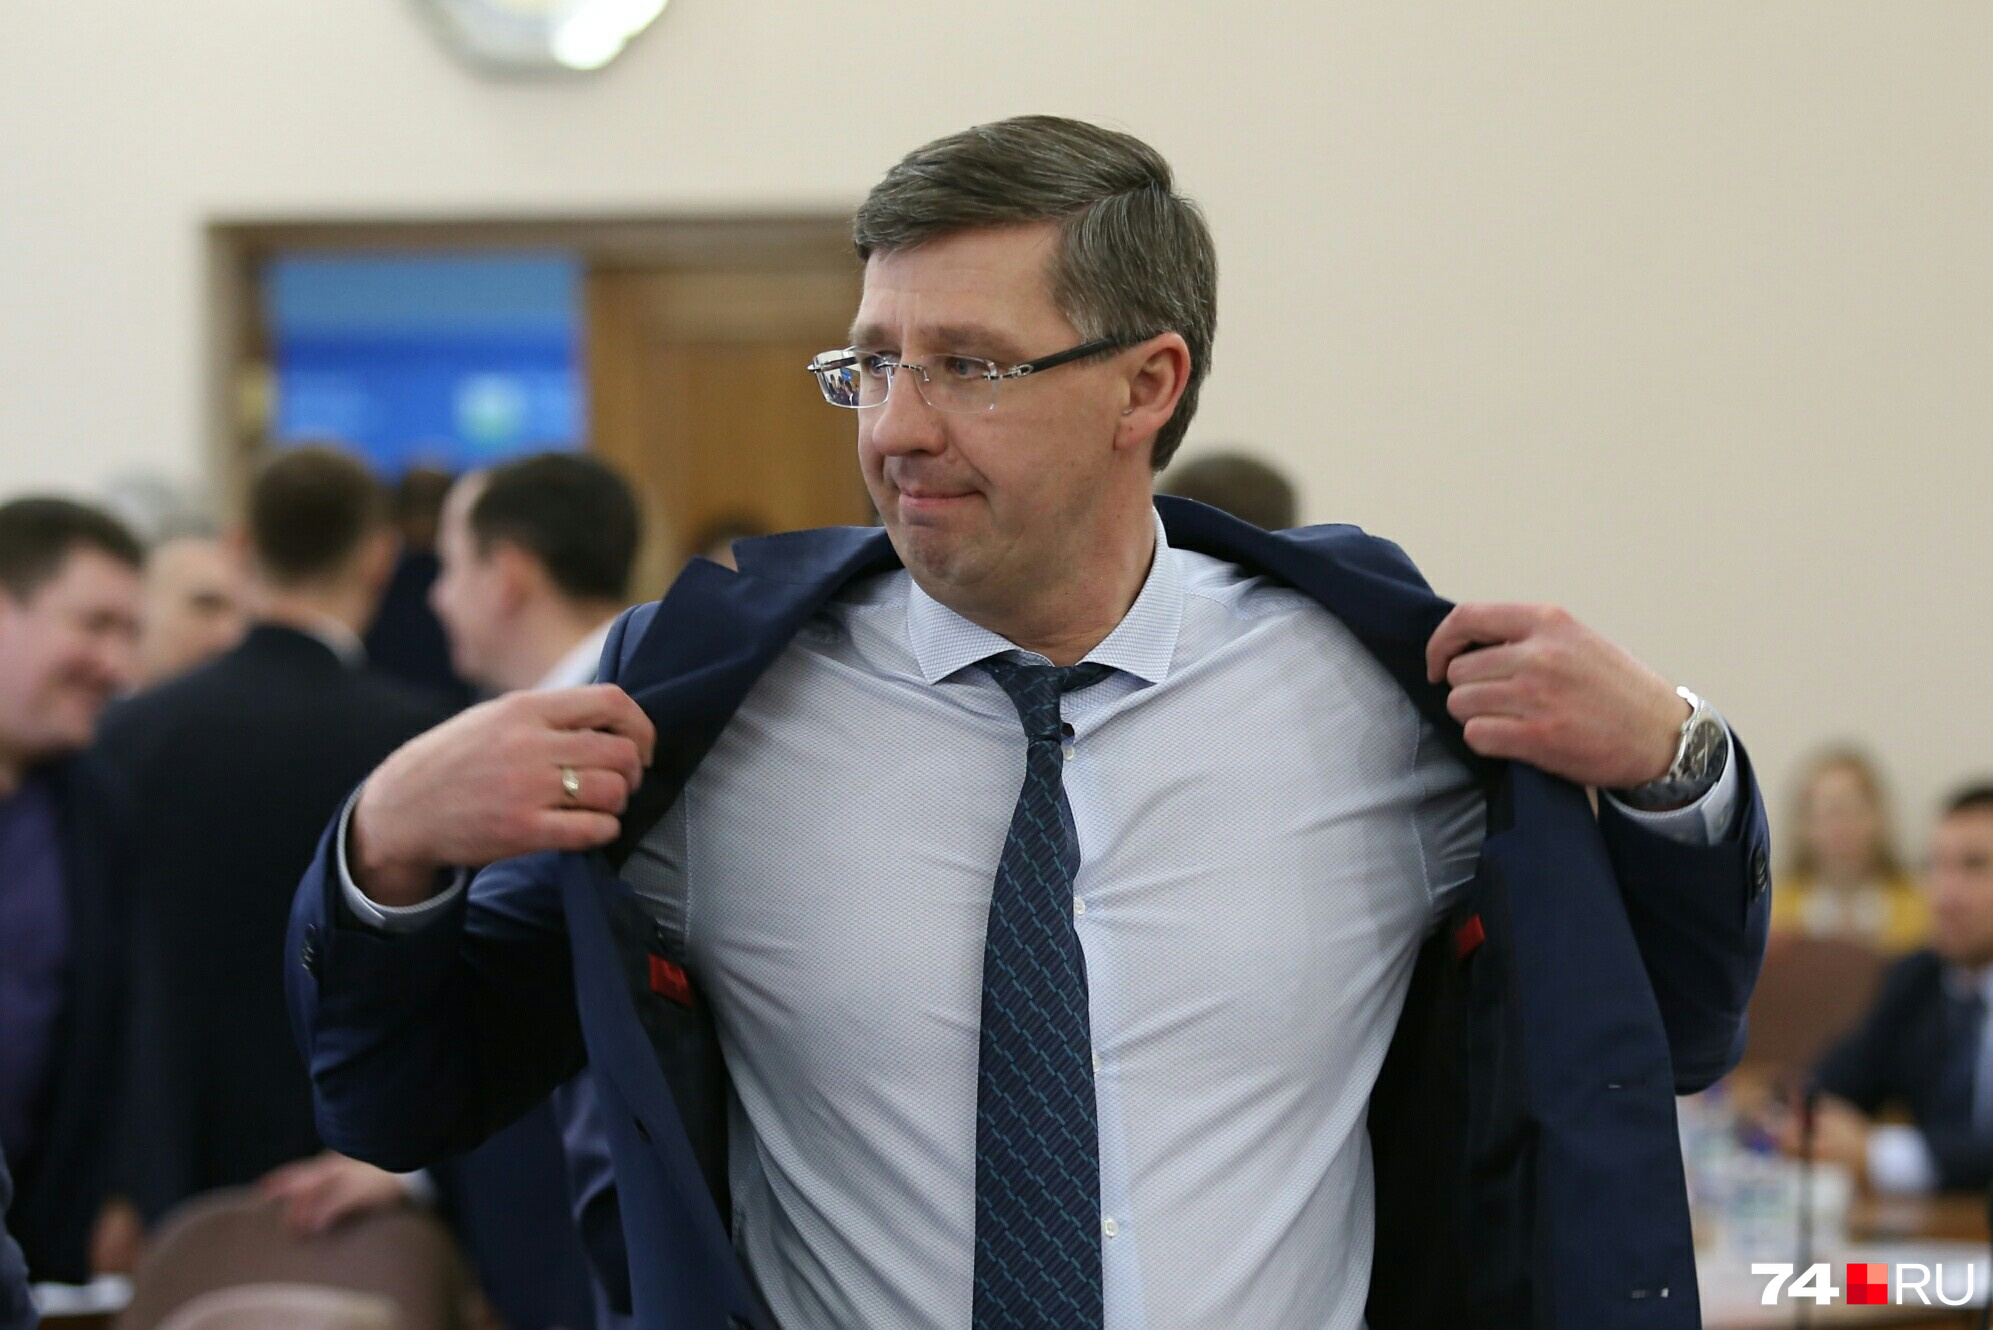 Александру Павлюченко от повестки заседания стало жарко...